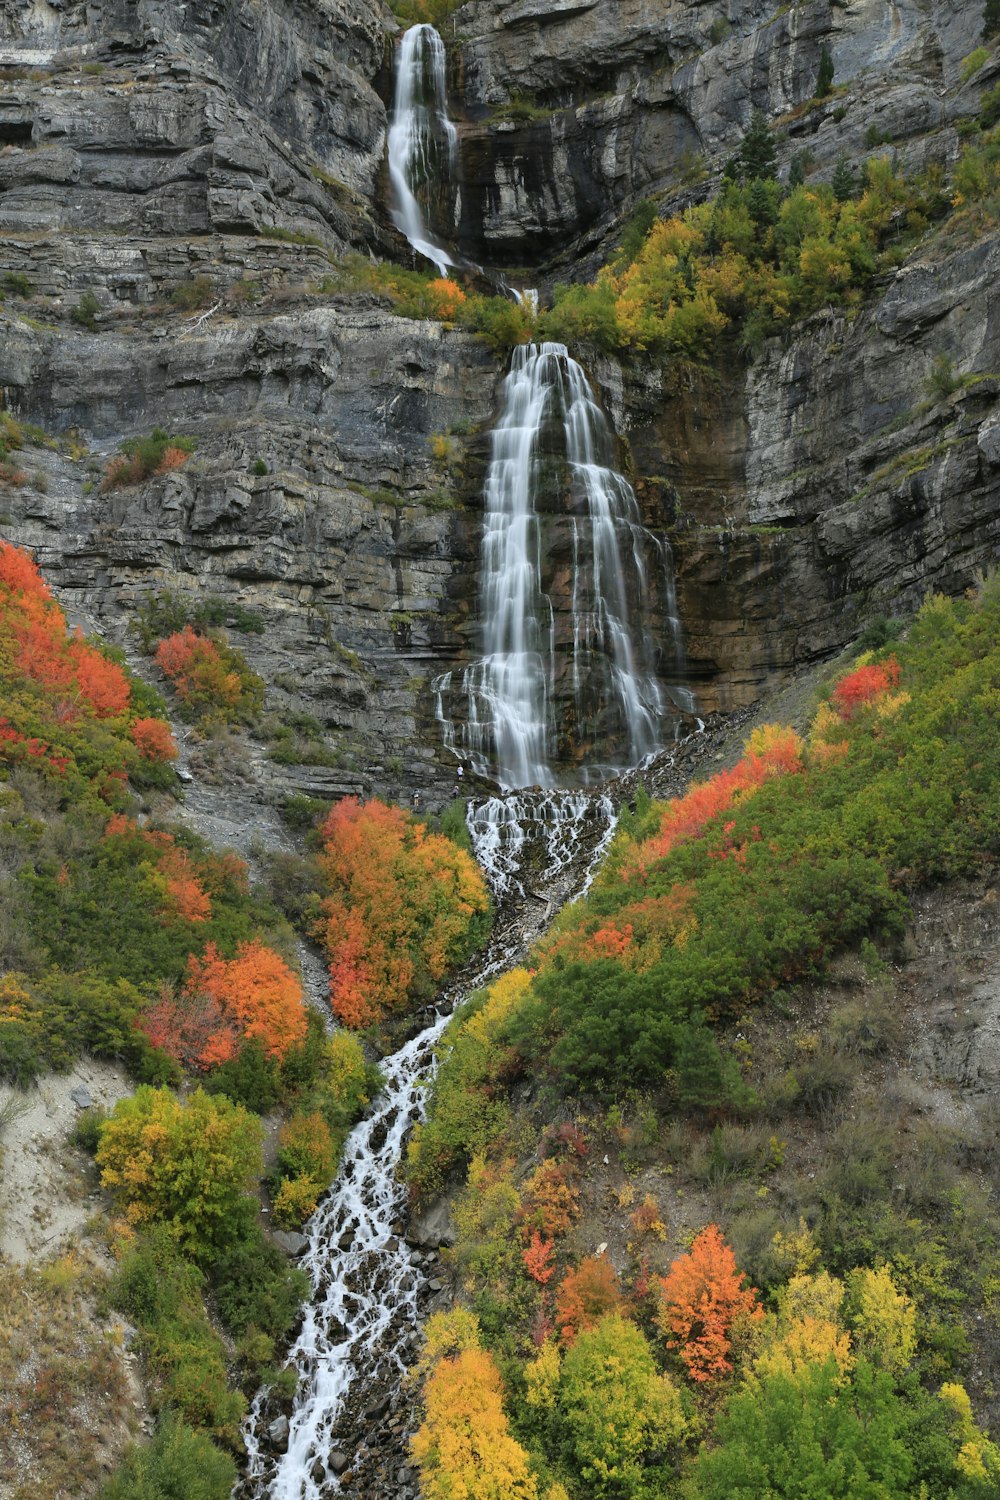 photo of waterfalls during daytime